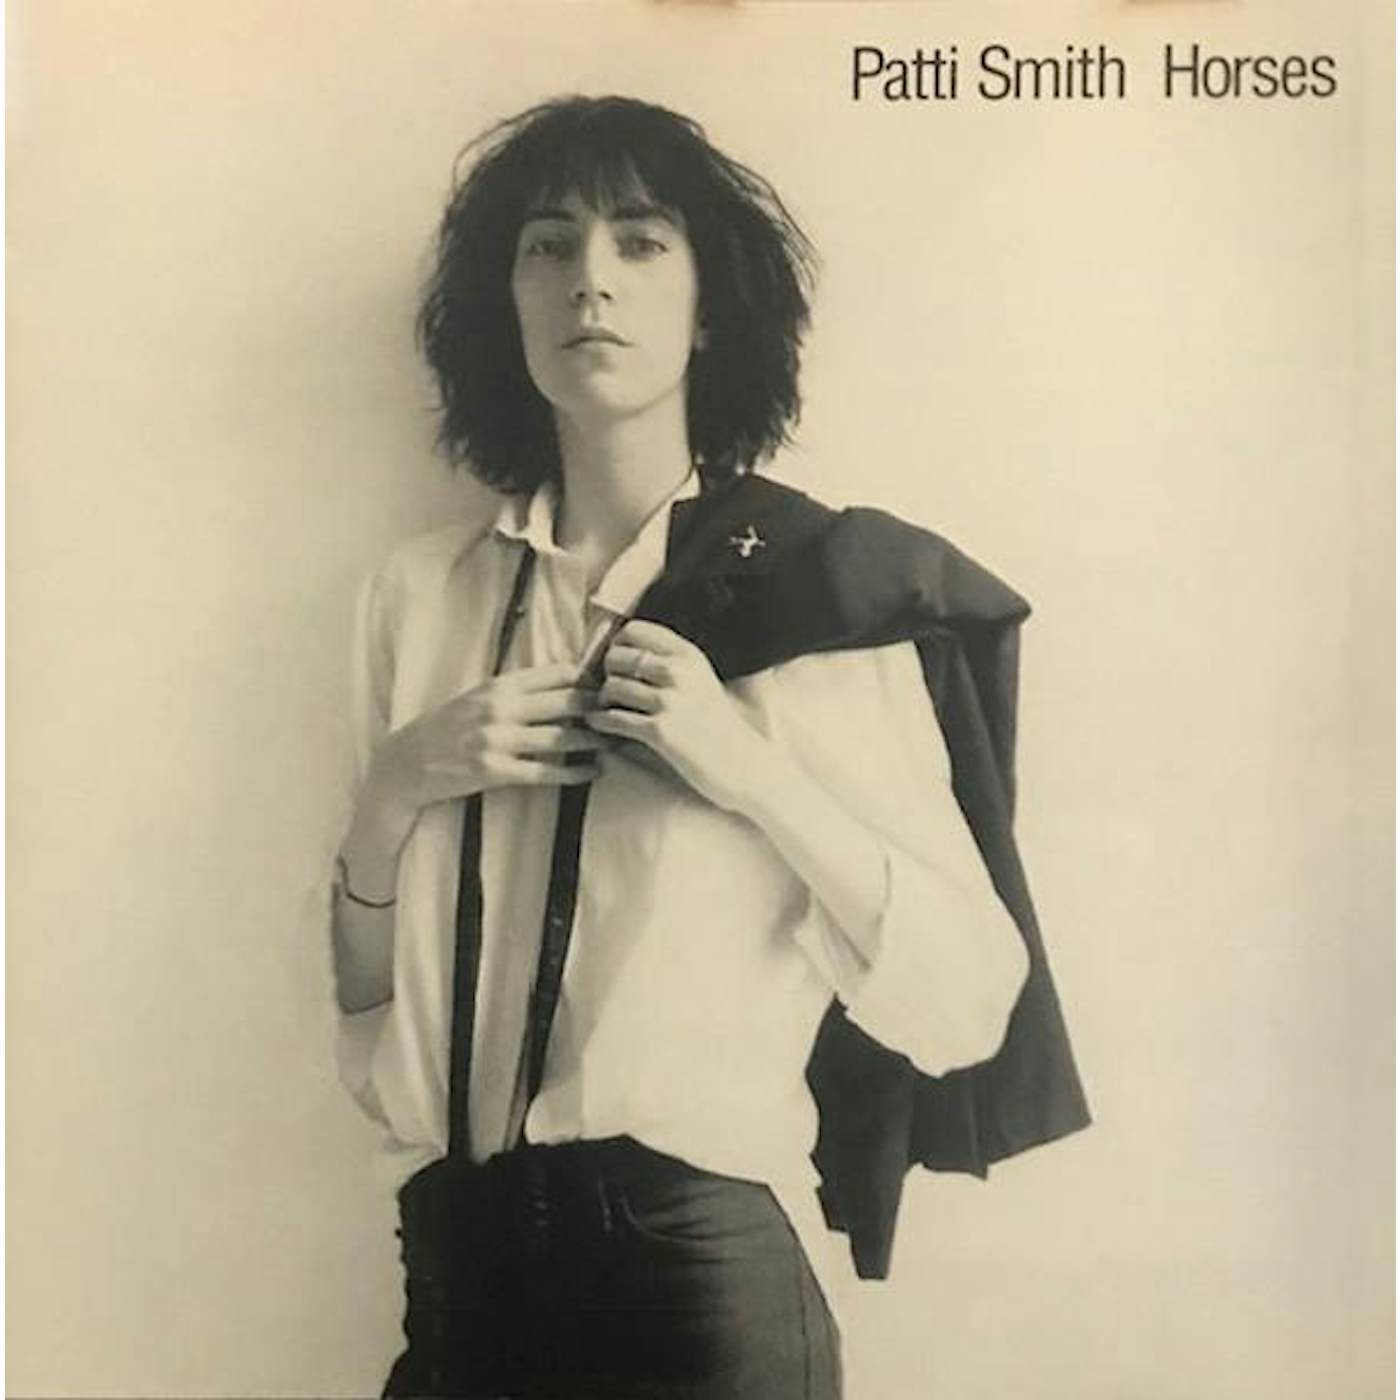 Patti Smith HORSES CD